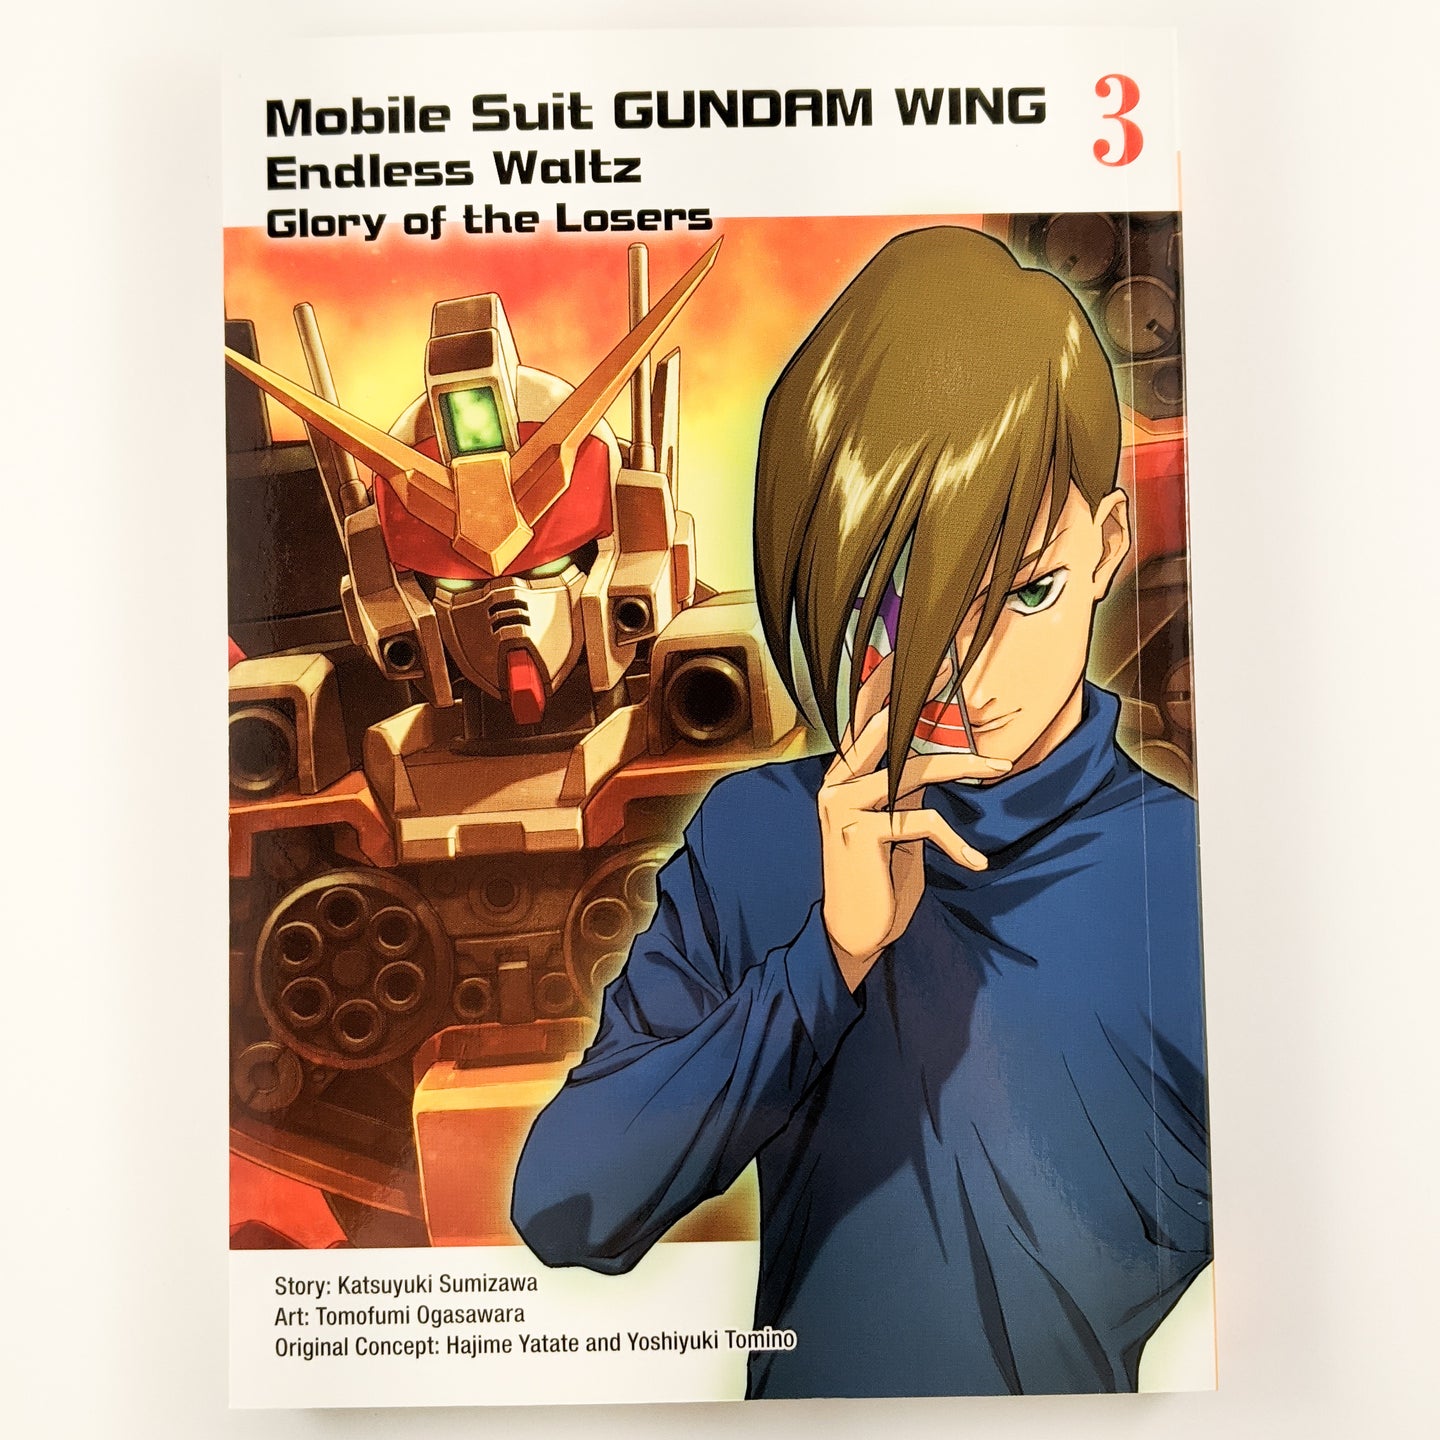 Mobile Suit: Gundam Wing Endless Waltz - Glory of the Losers Volume 3. Manga by Katsuyuki Sumizawa and Tomofumi Ogasawara.